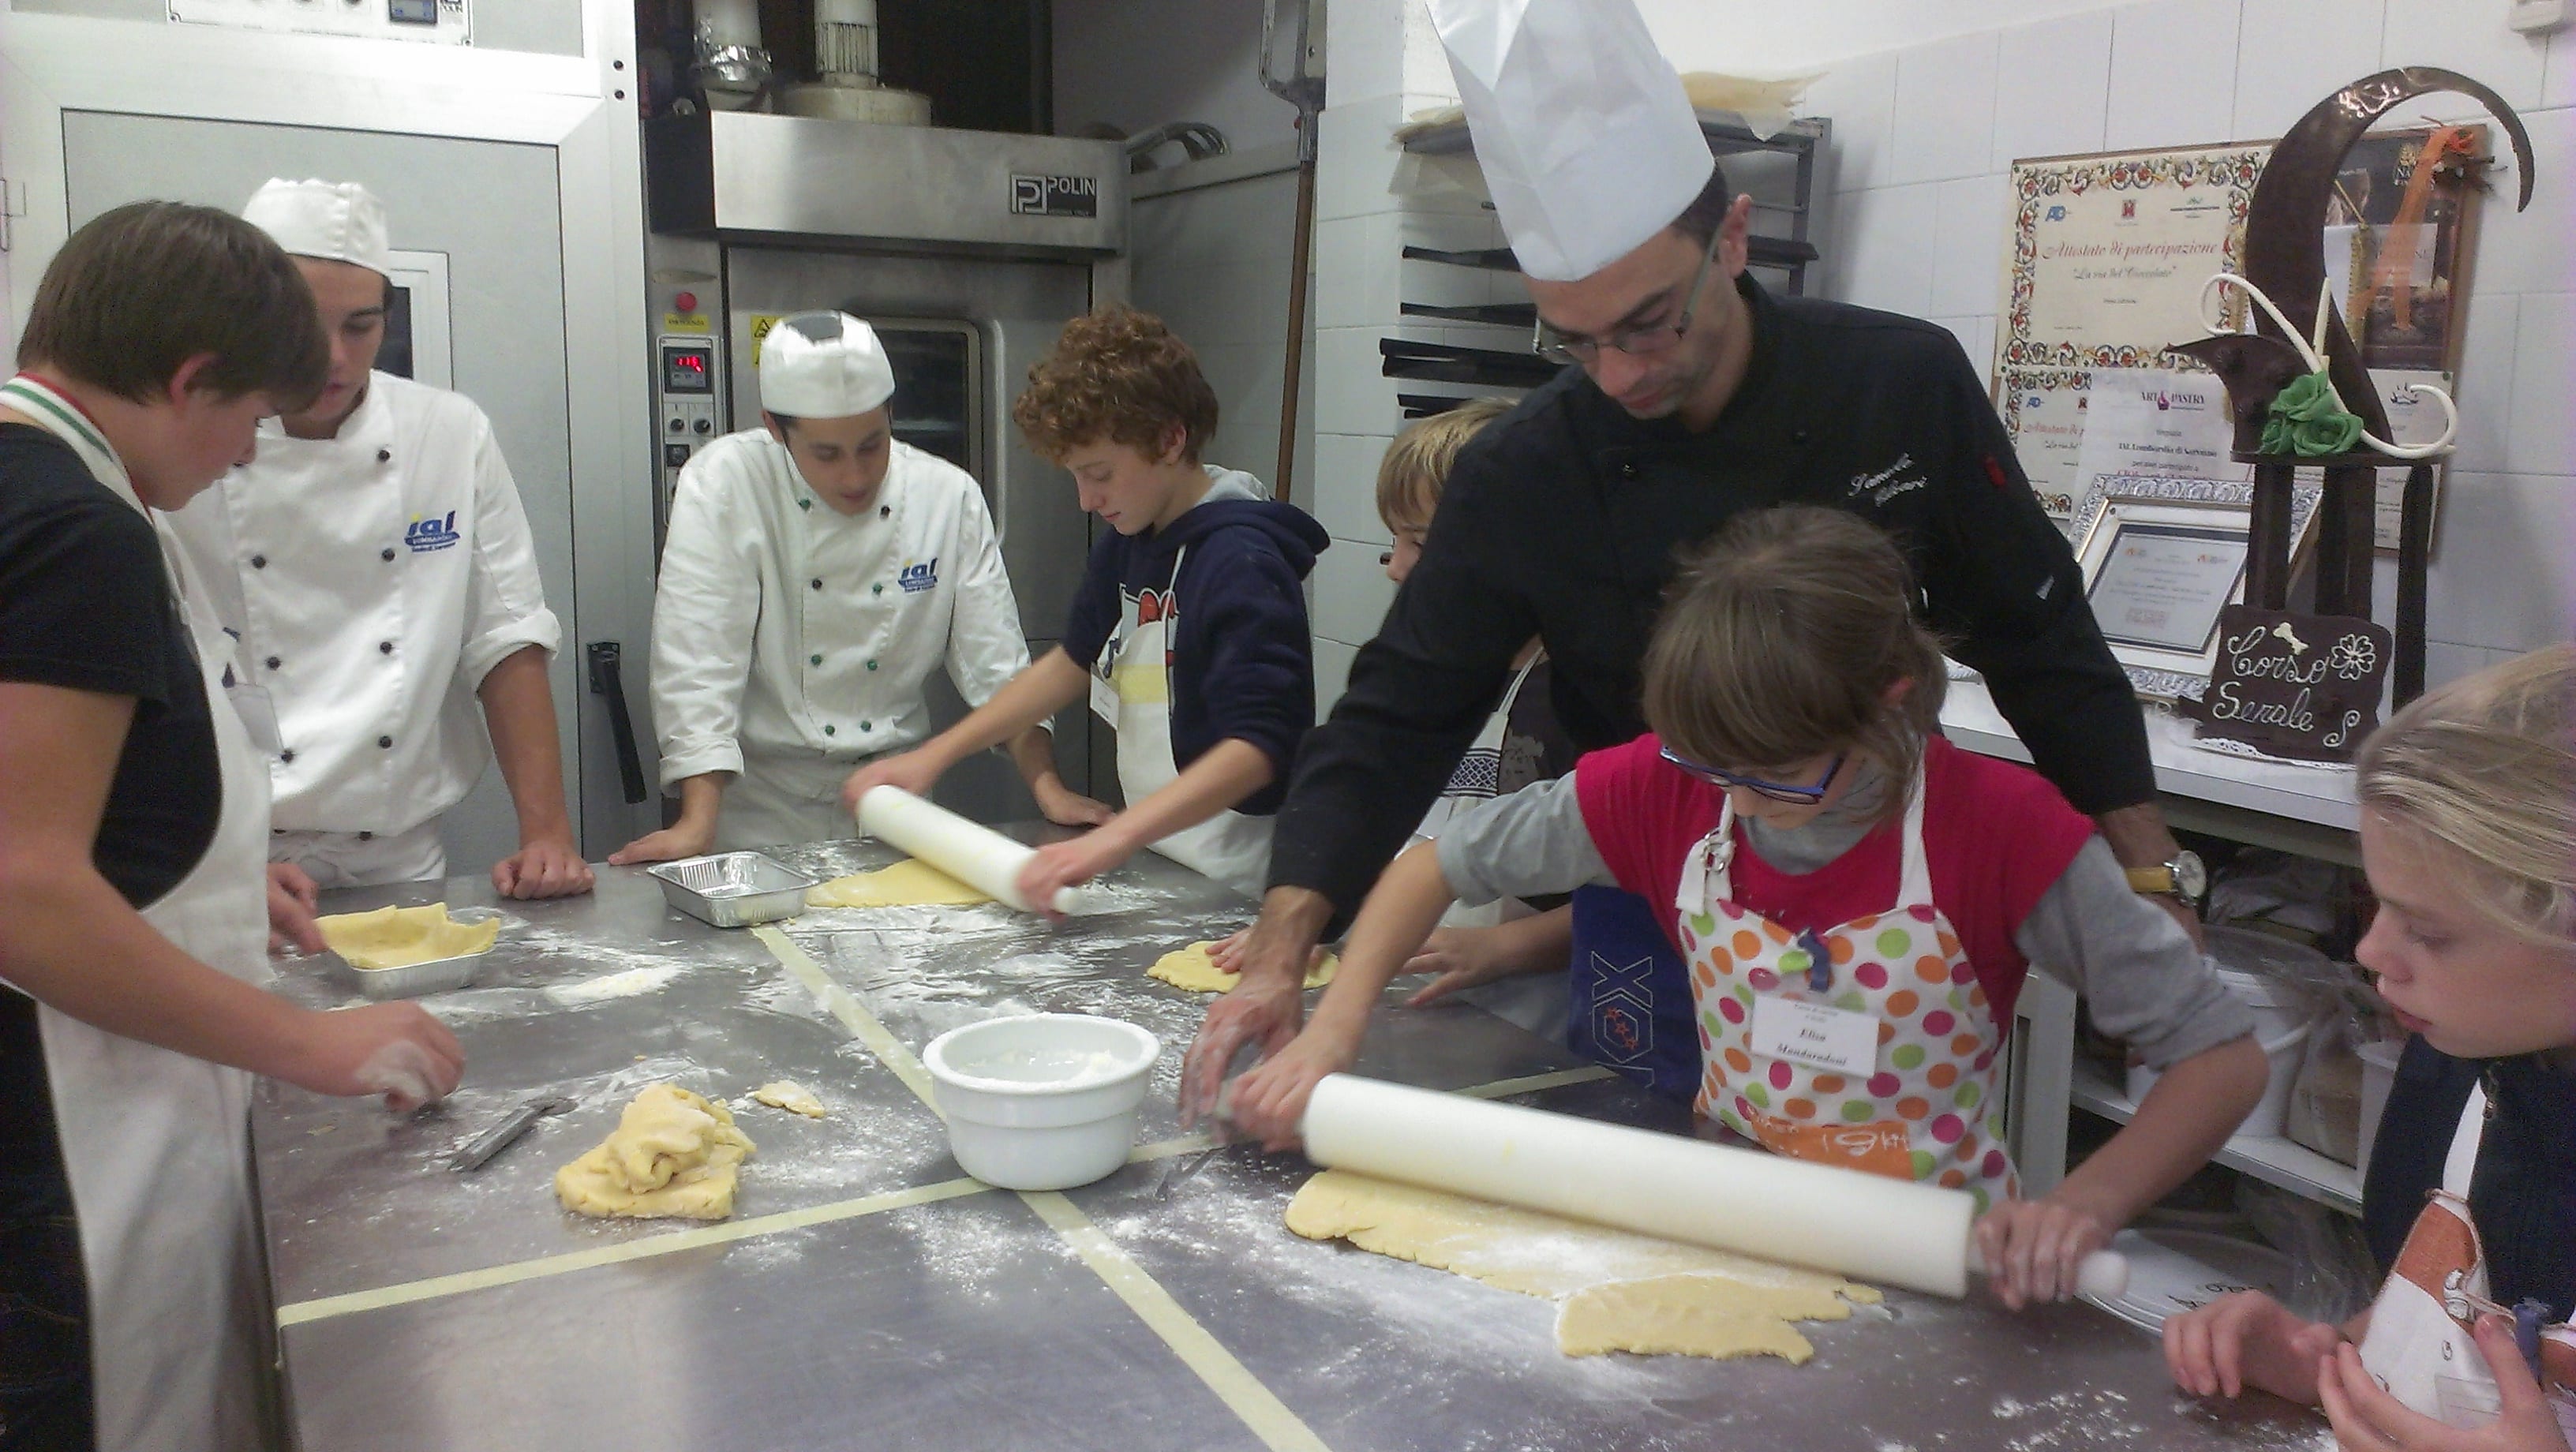 Dalle focaccine alla cheesecake: corsi di cucina per baby chef firmati Ial Lombardia